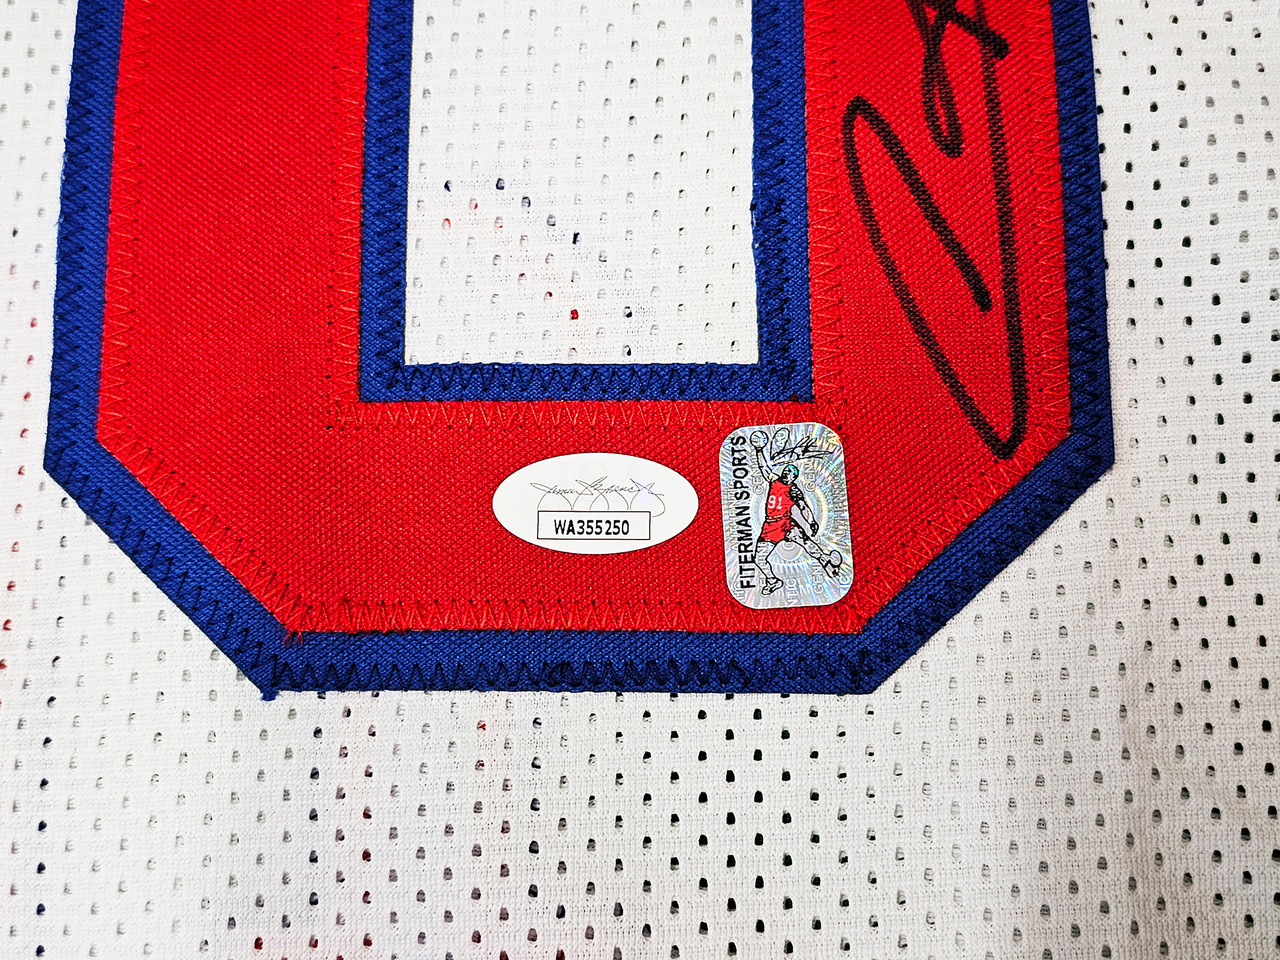 Chicago Bulls DeMar DeRozan Autographed Red Jersey Beckett BAS Witness  Stock #209345